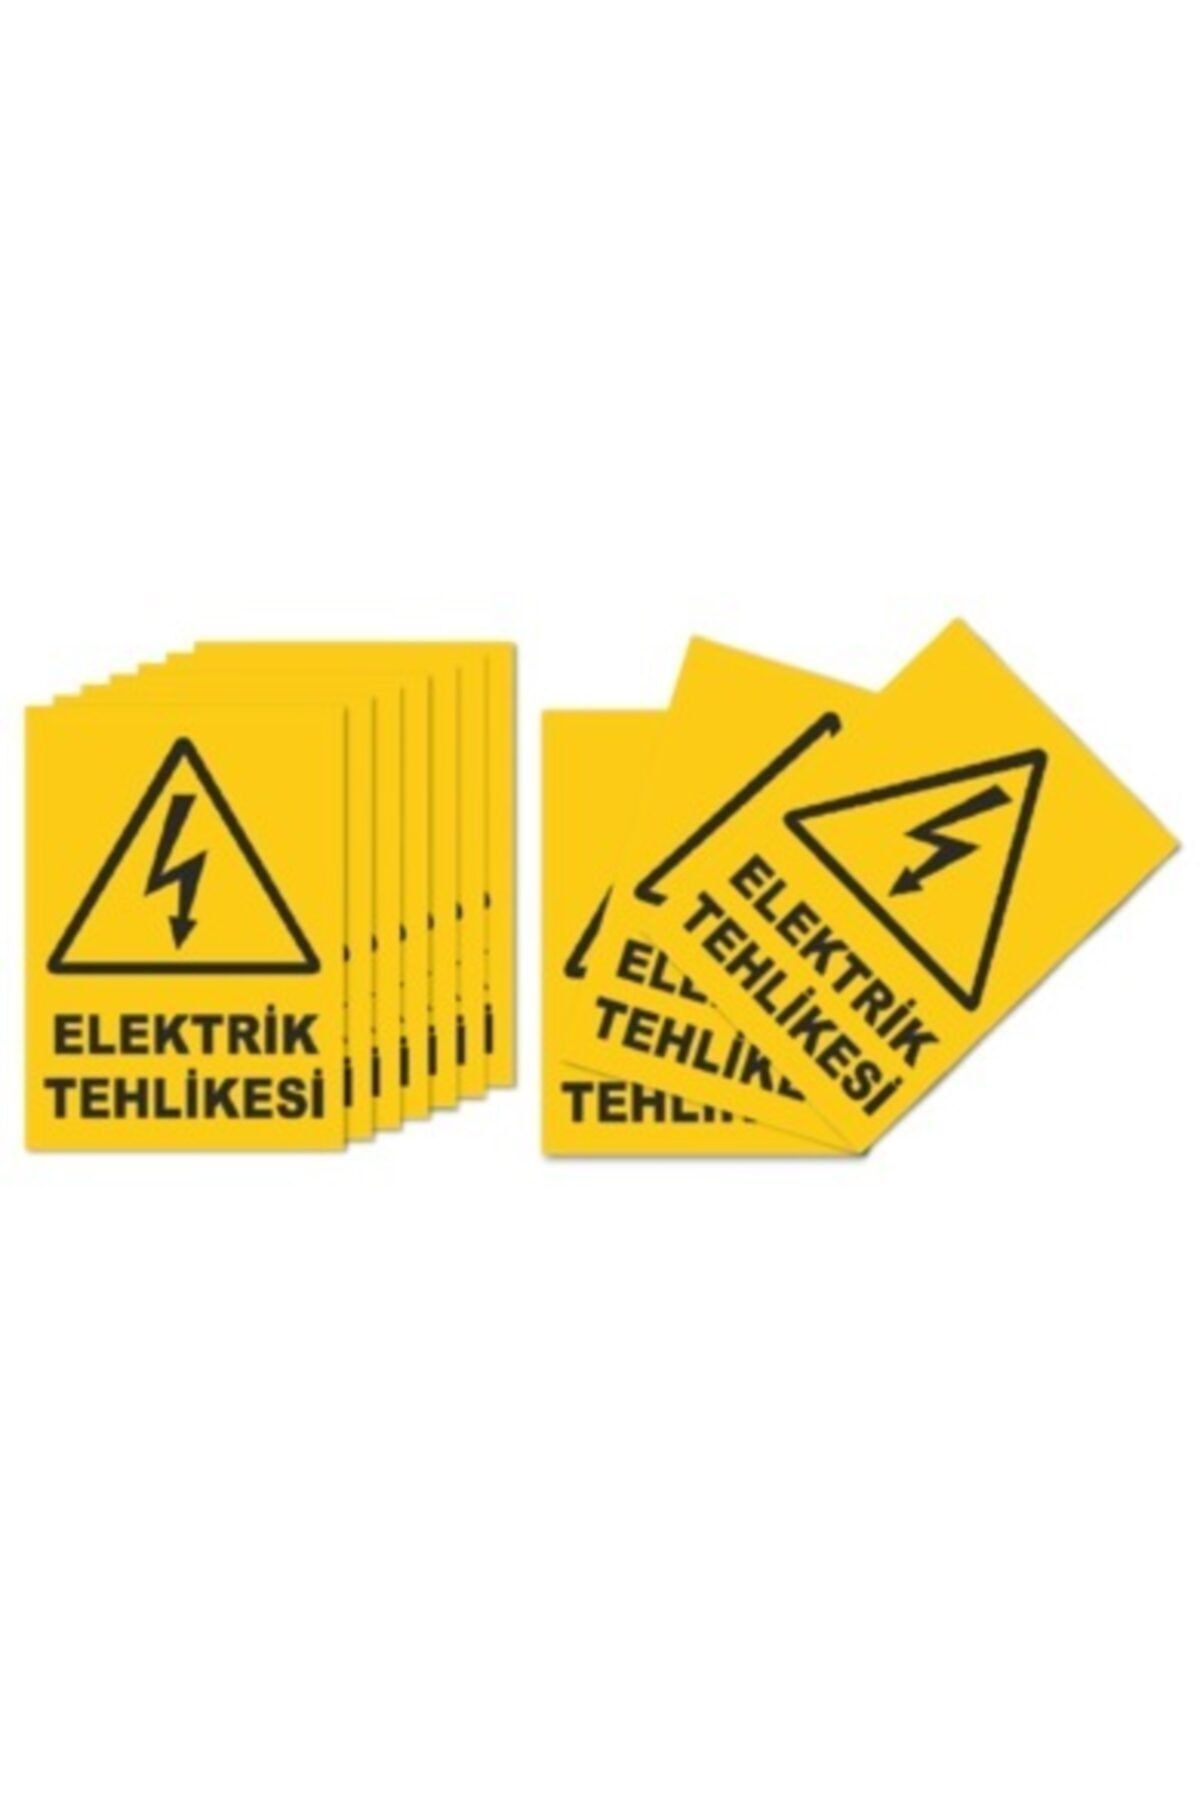 Ufuk Çizgisi Elektrik Tehlikesi Uyarı Levhası 10cm x 15cm 100 Adet Dekota